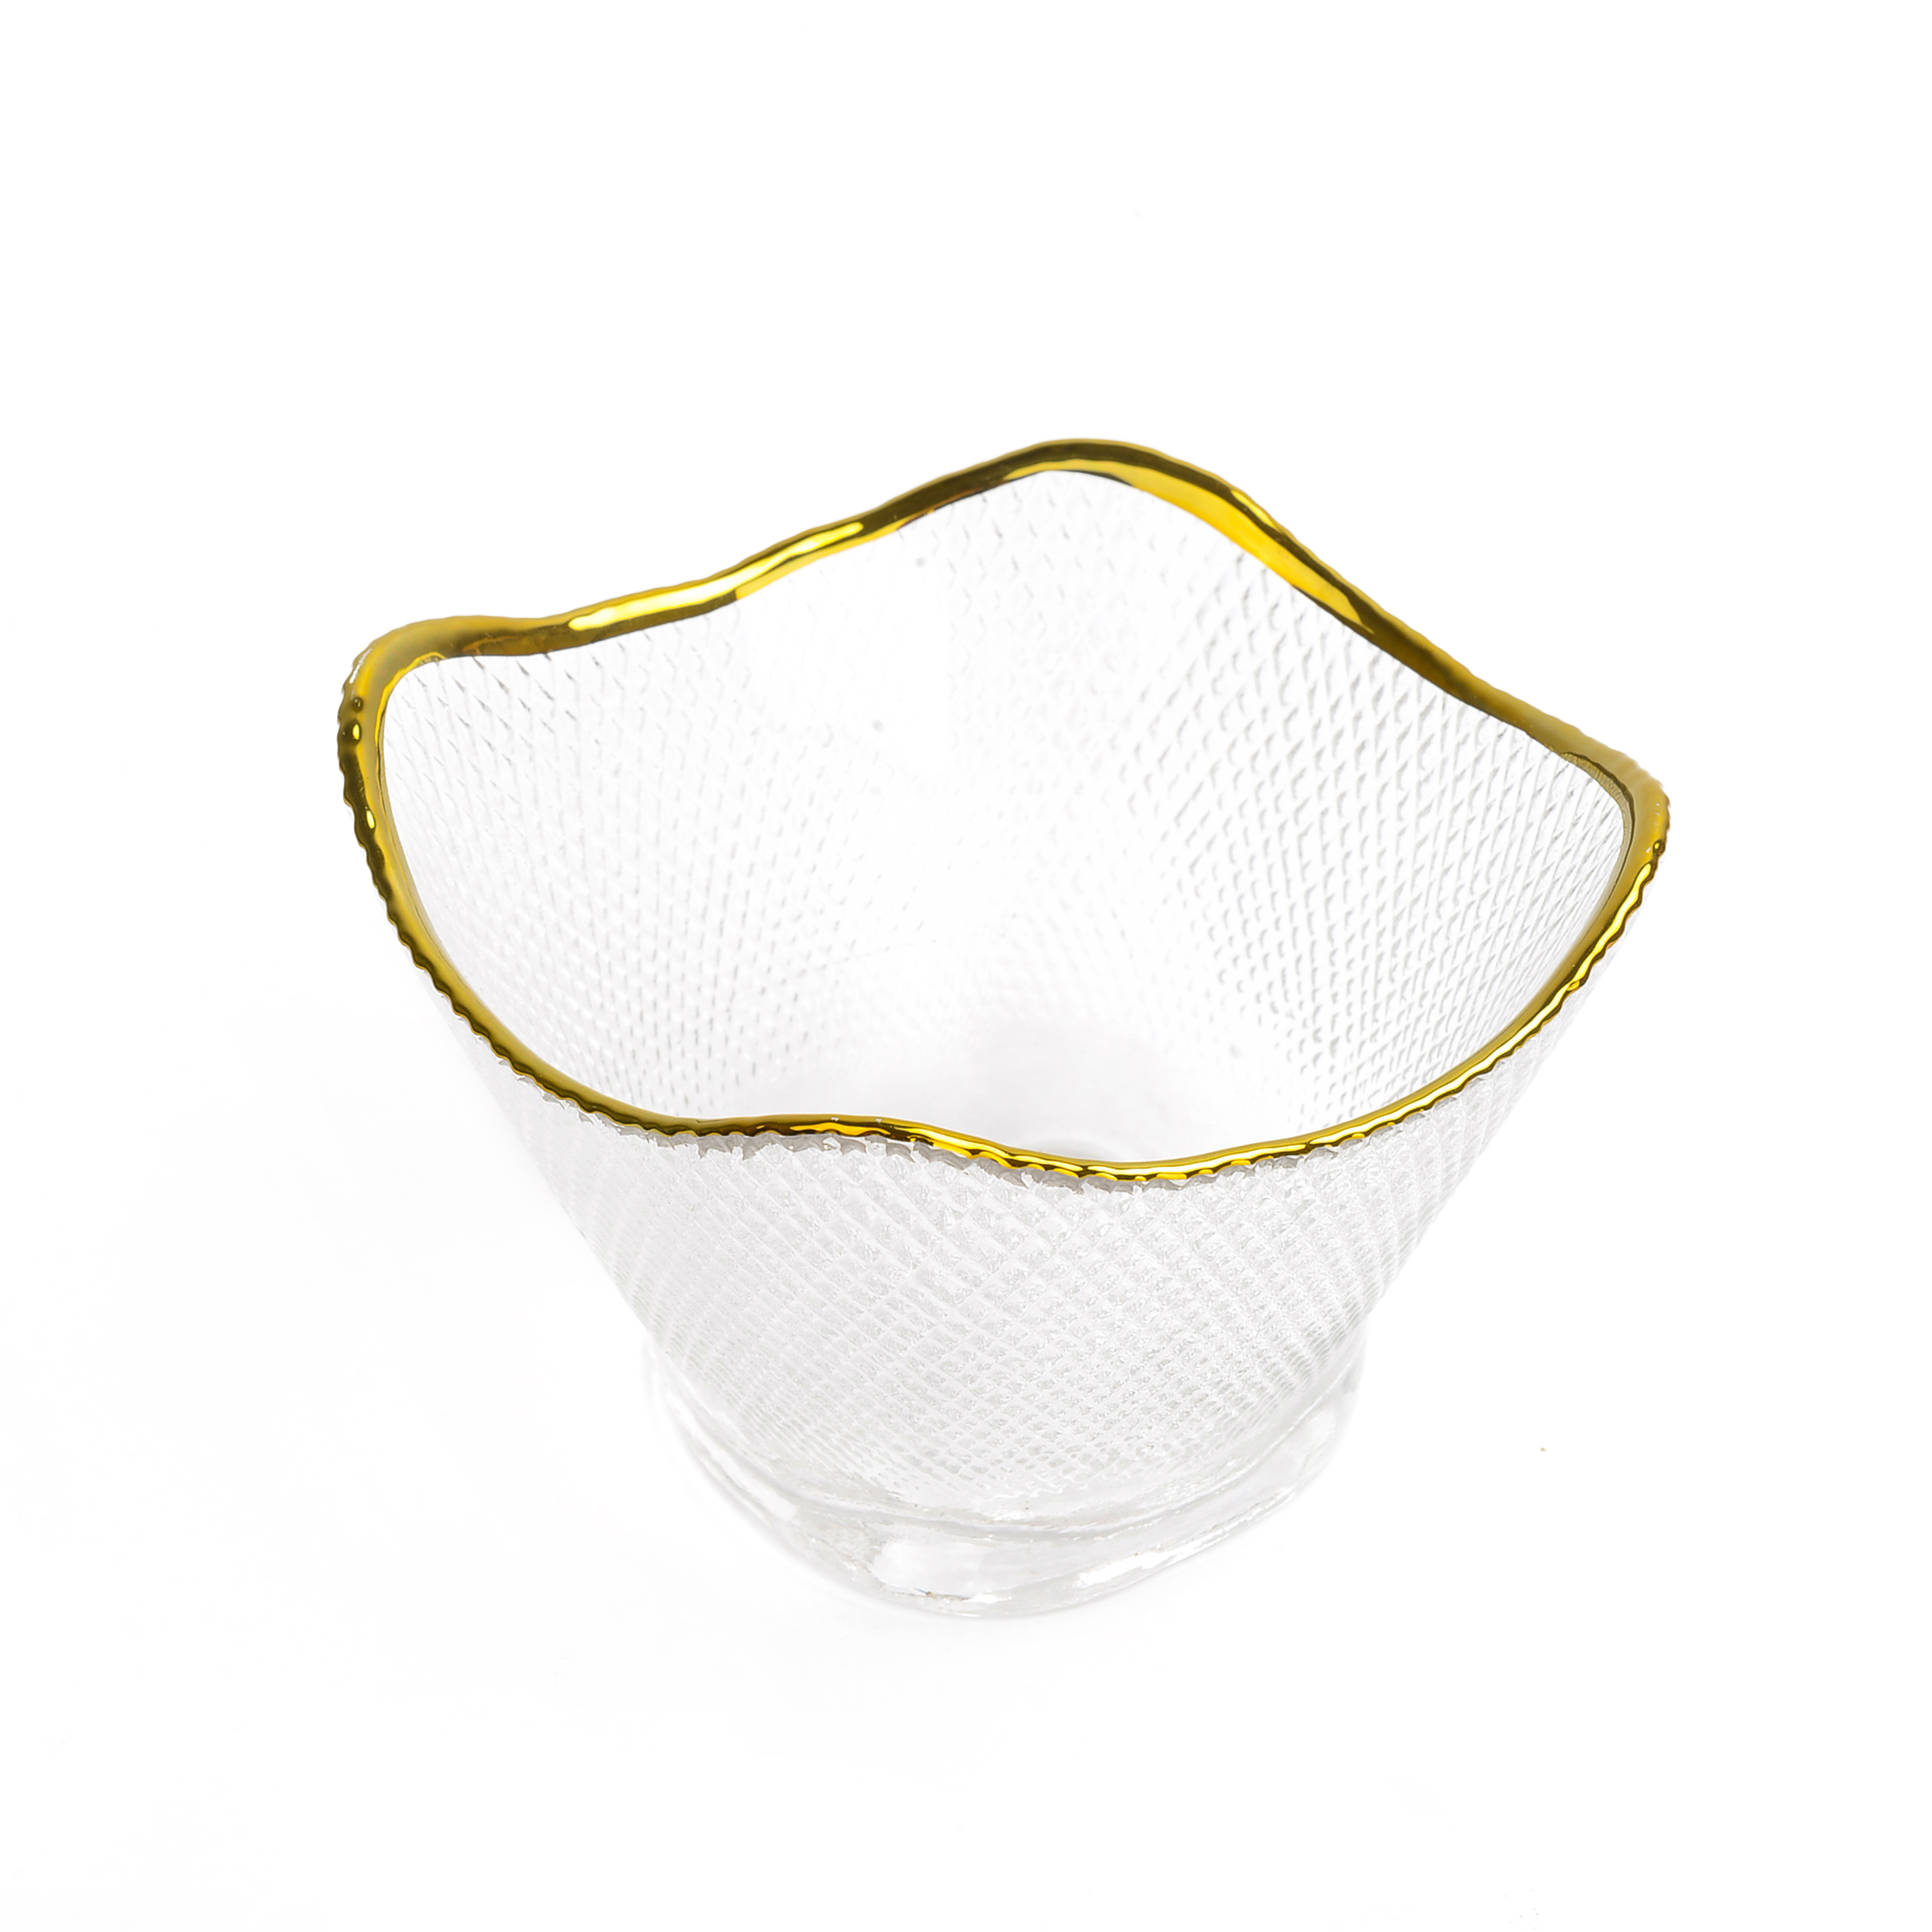 方形透明金边玻璃碗 个性锤纹水果碗 四方斗笠沙拉碗畅销爆款详情图5